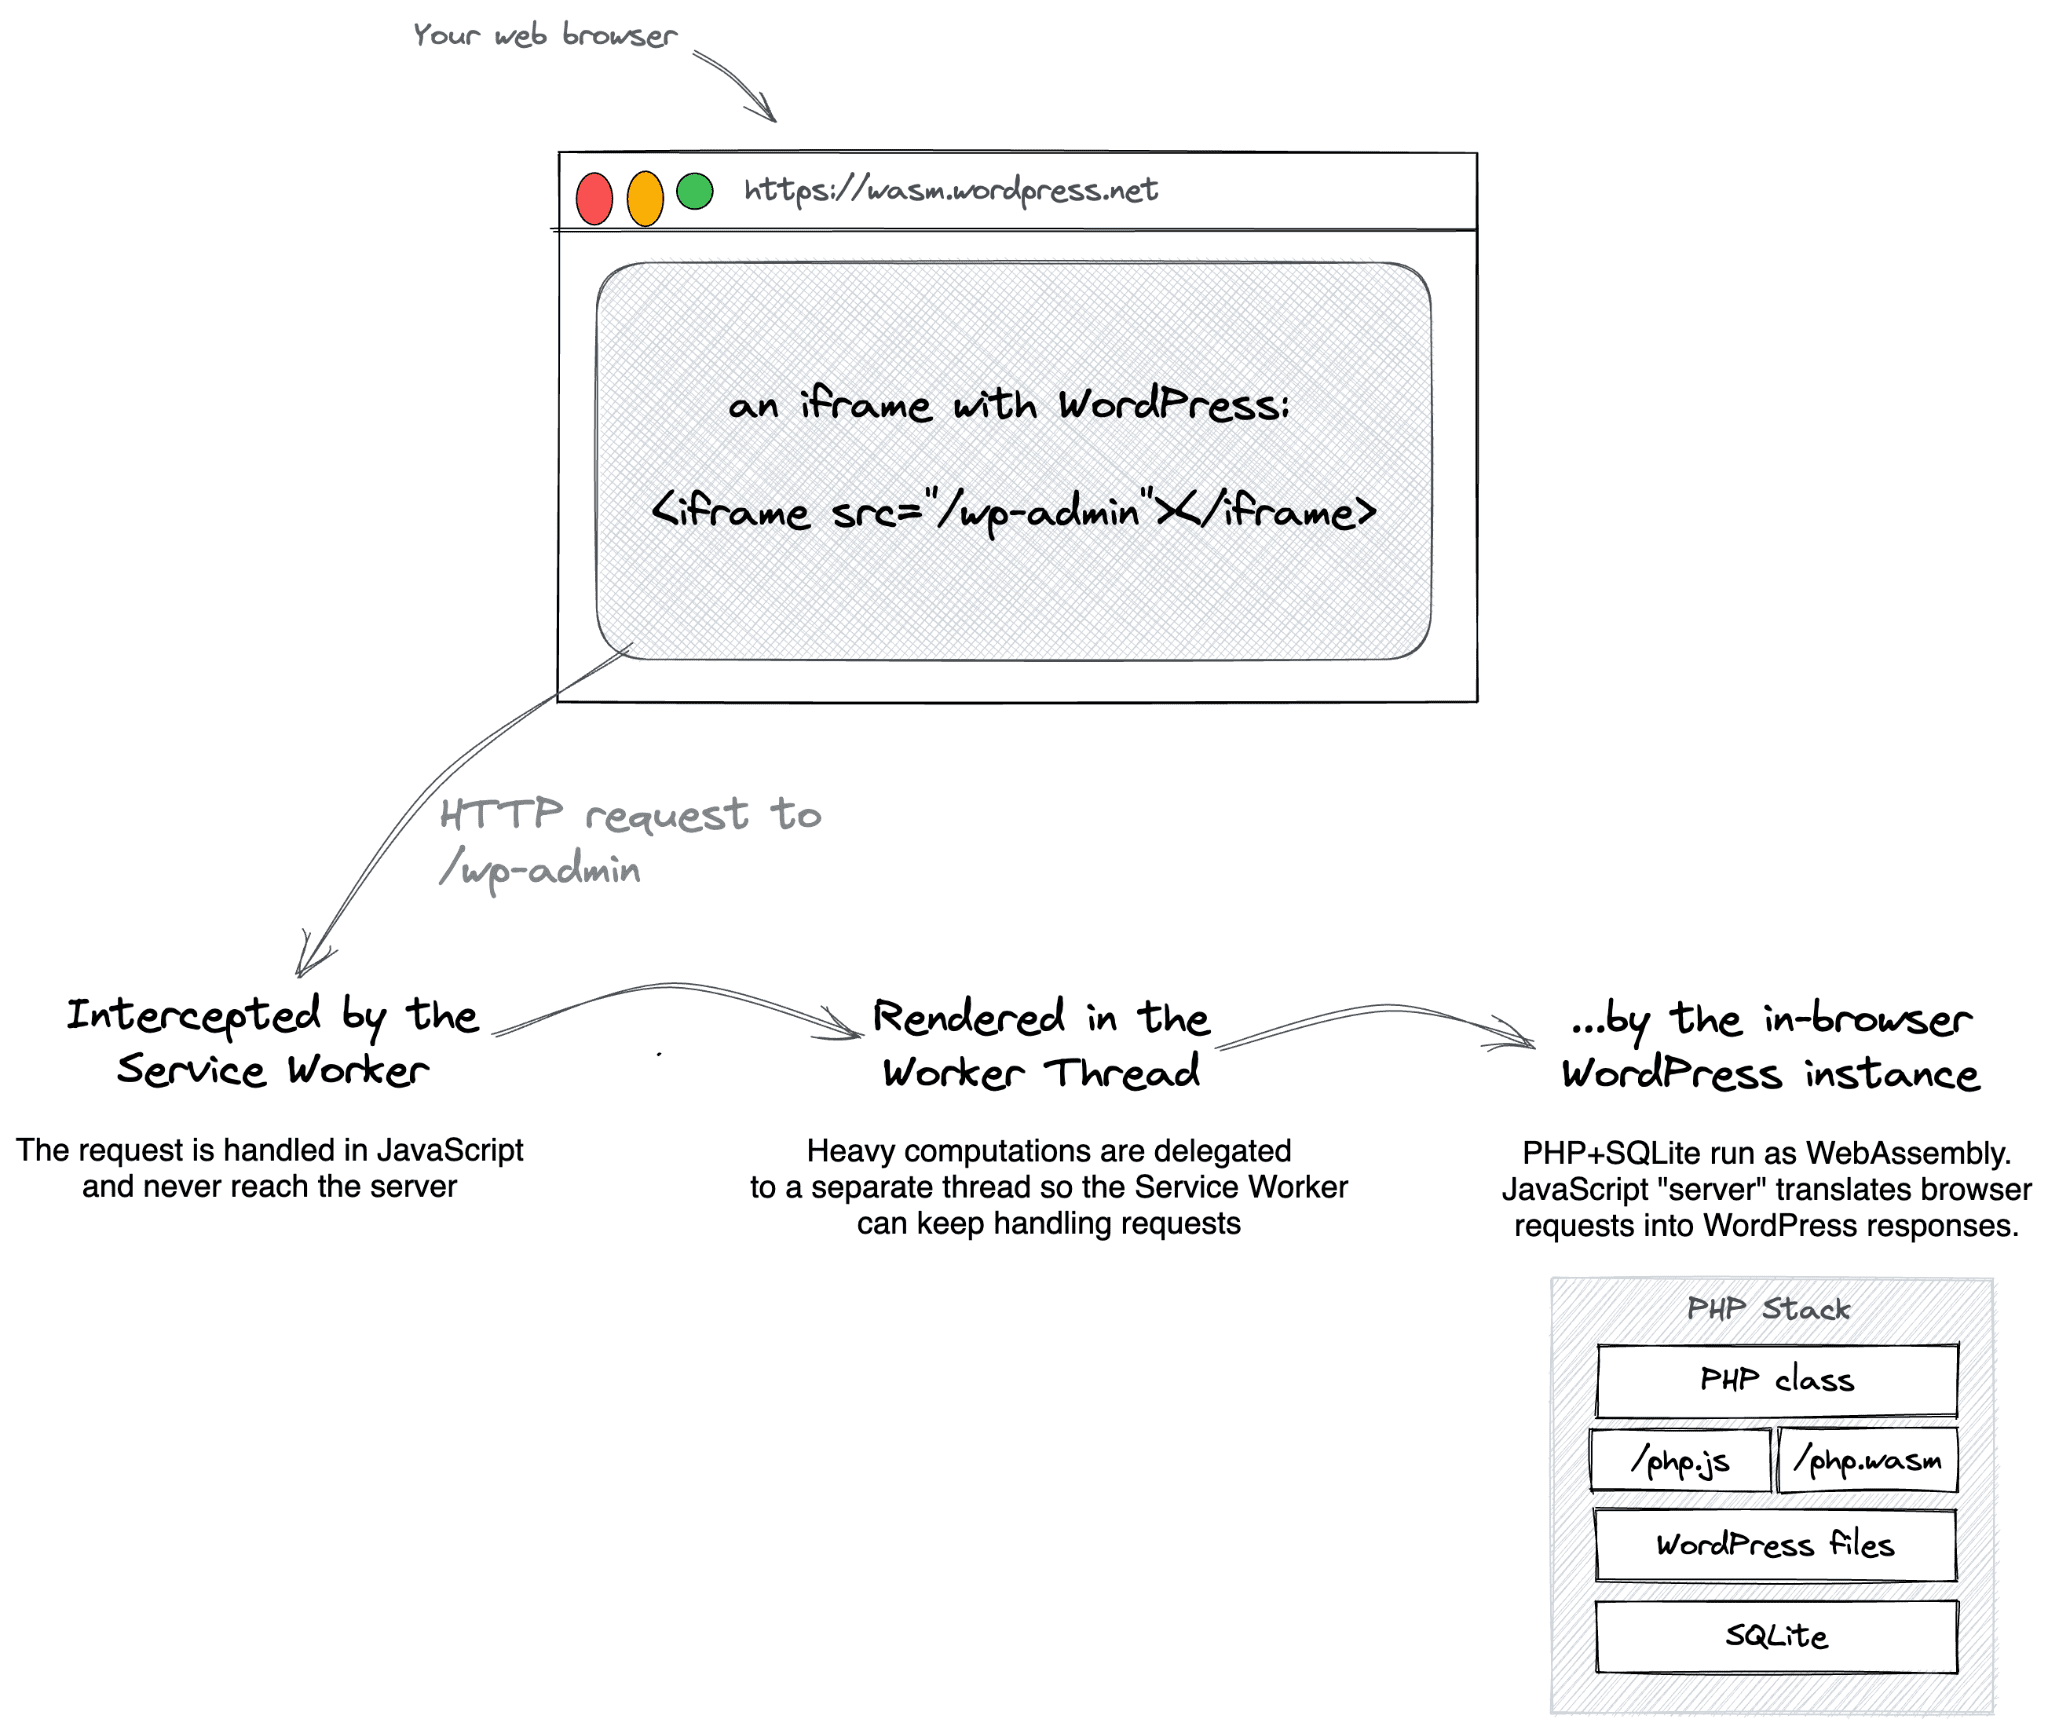 Diagram alir yang dimulai dengan iframe yang mengarah ke wp-admin resource, panggilan yang dicegat oleh pekerja layanan, dirender dalam thread pekerja, dan pada akhirnya diterjemahkan ke respons WordPress oleh server dalam browser.